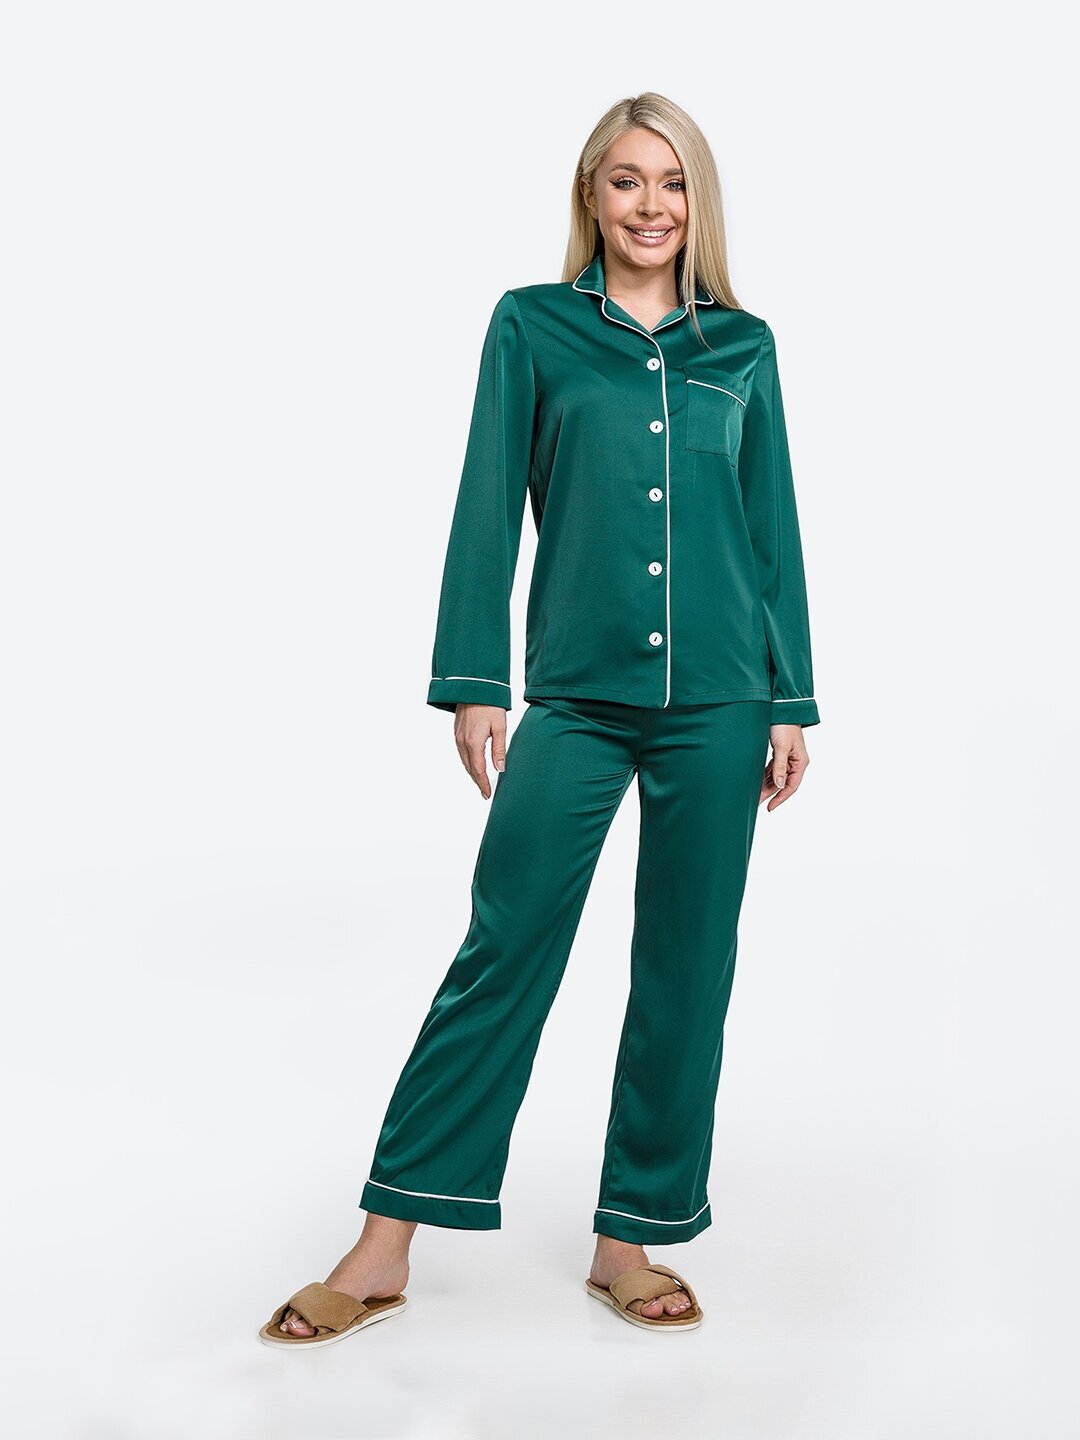 Пижама HappyFox, рубашка, брюки, длинный рукав, карманы, размер 50, зеленый - фотография № 2